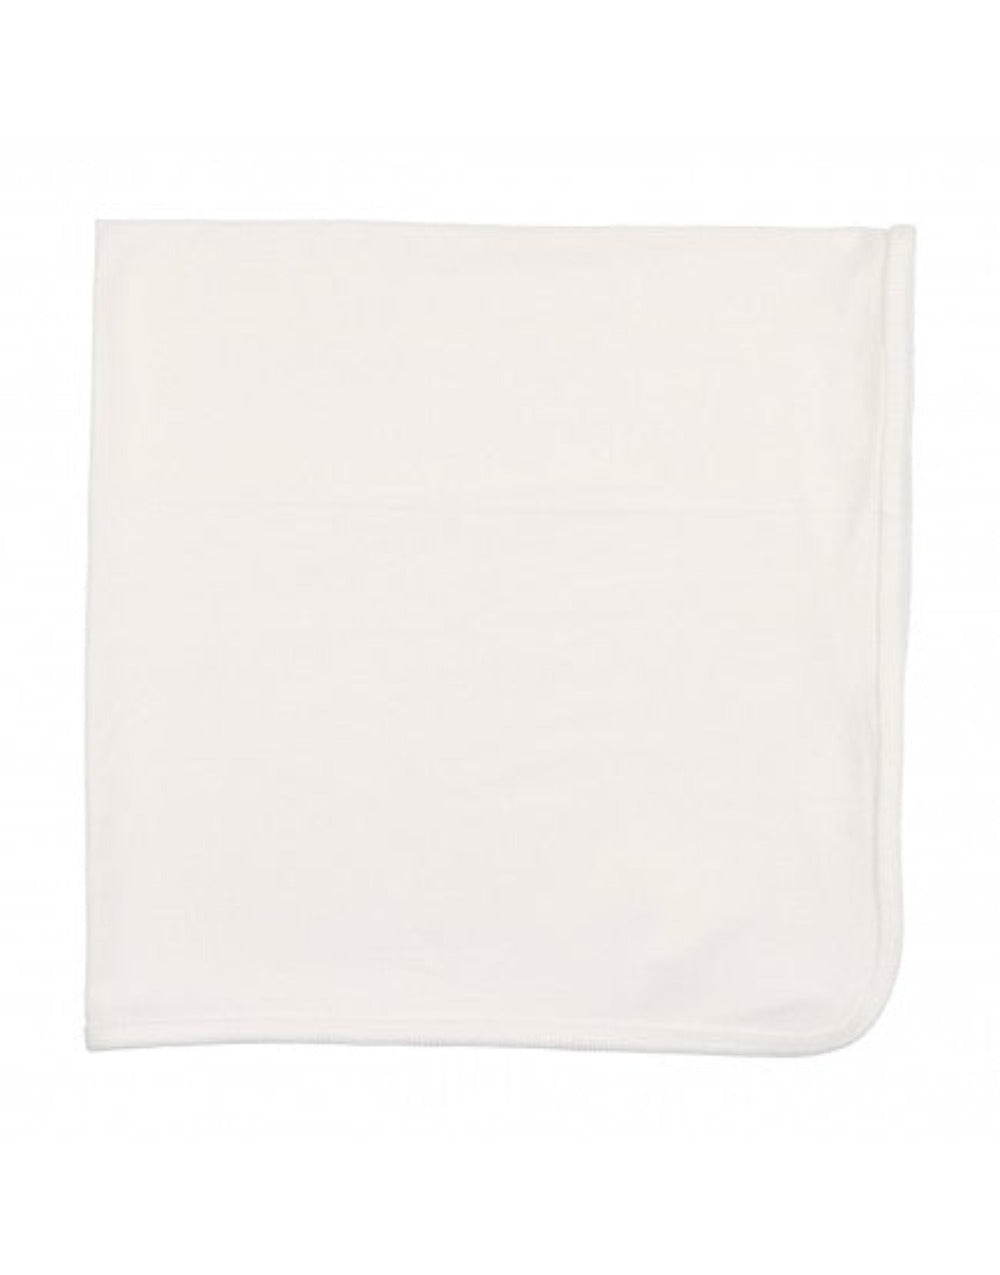 Lilette Logo Foldover Blanket - White